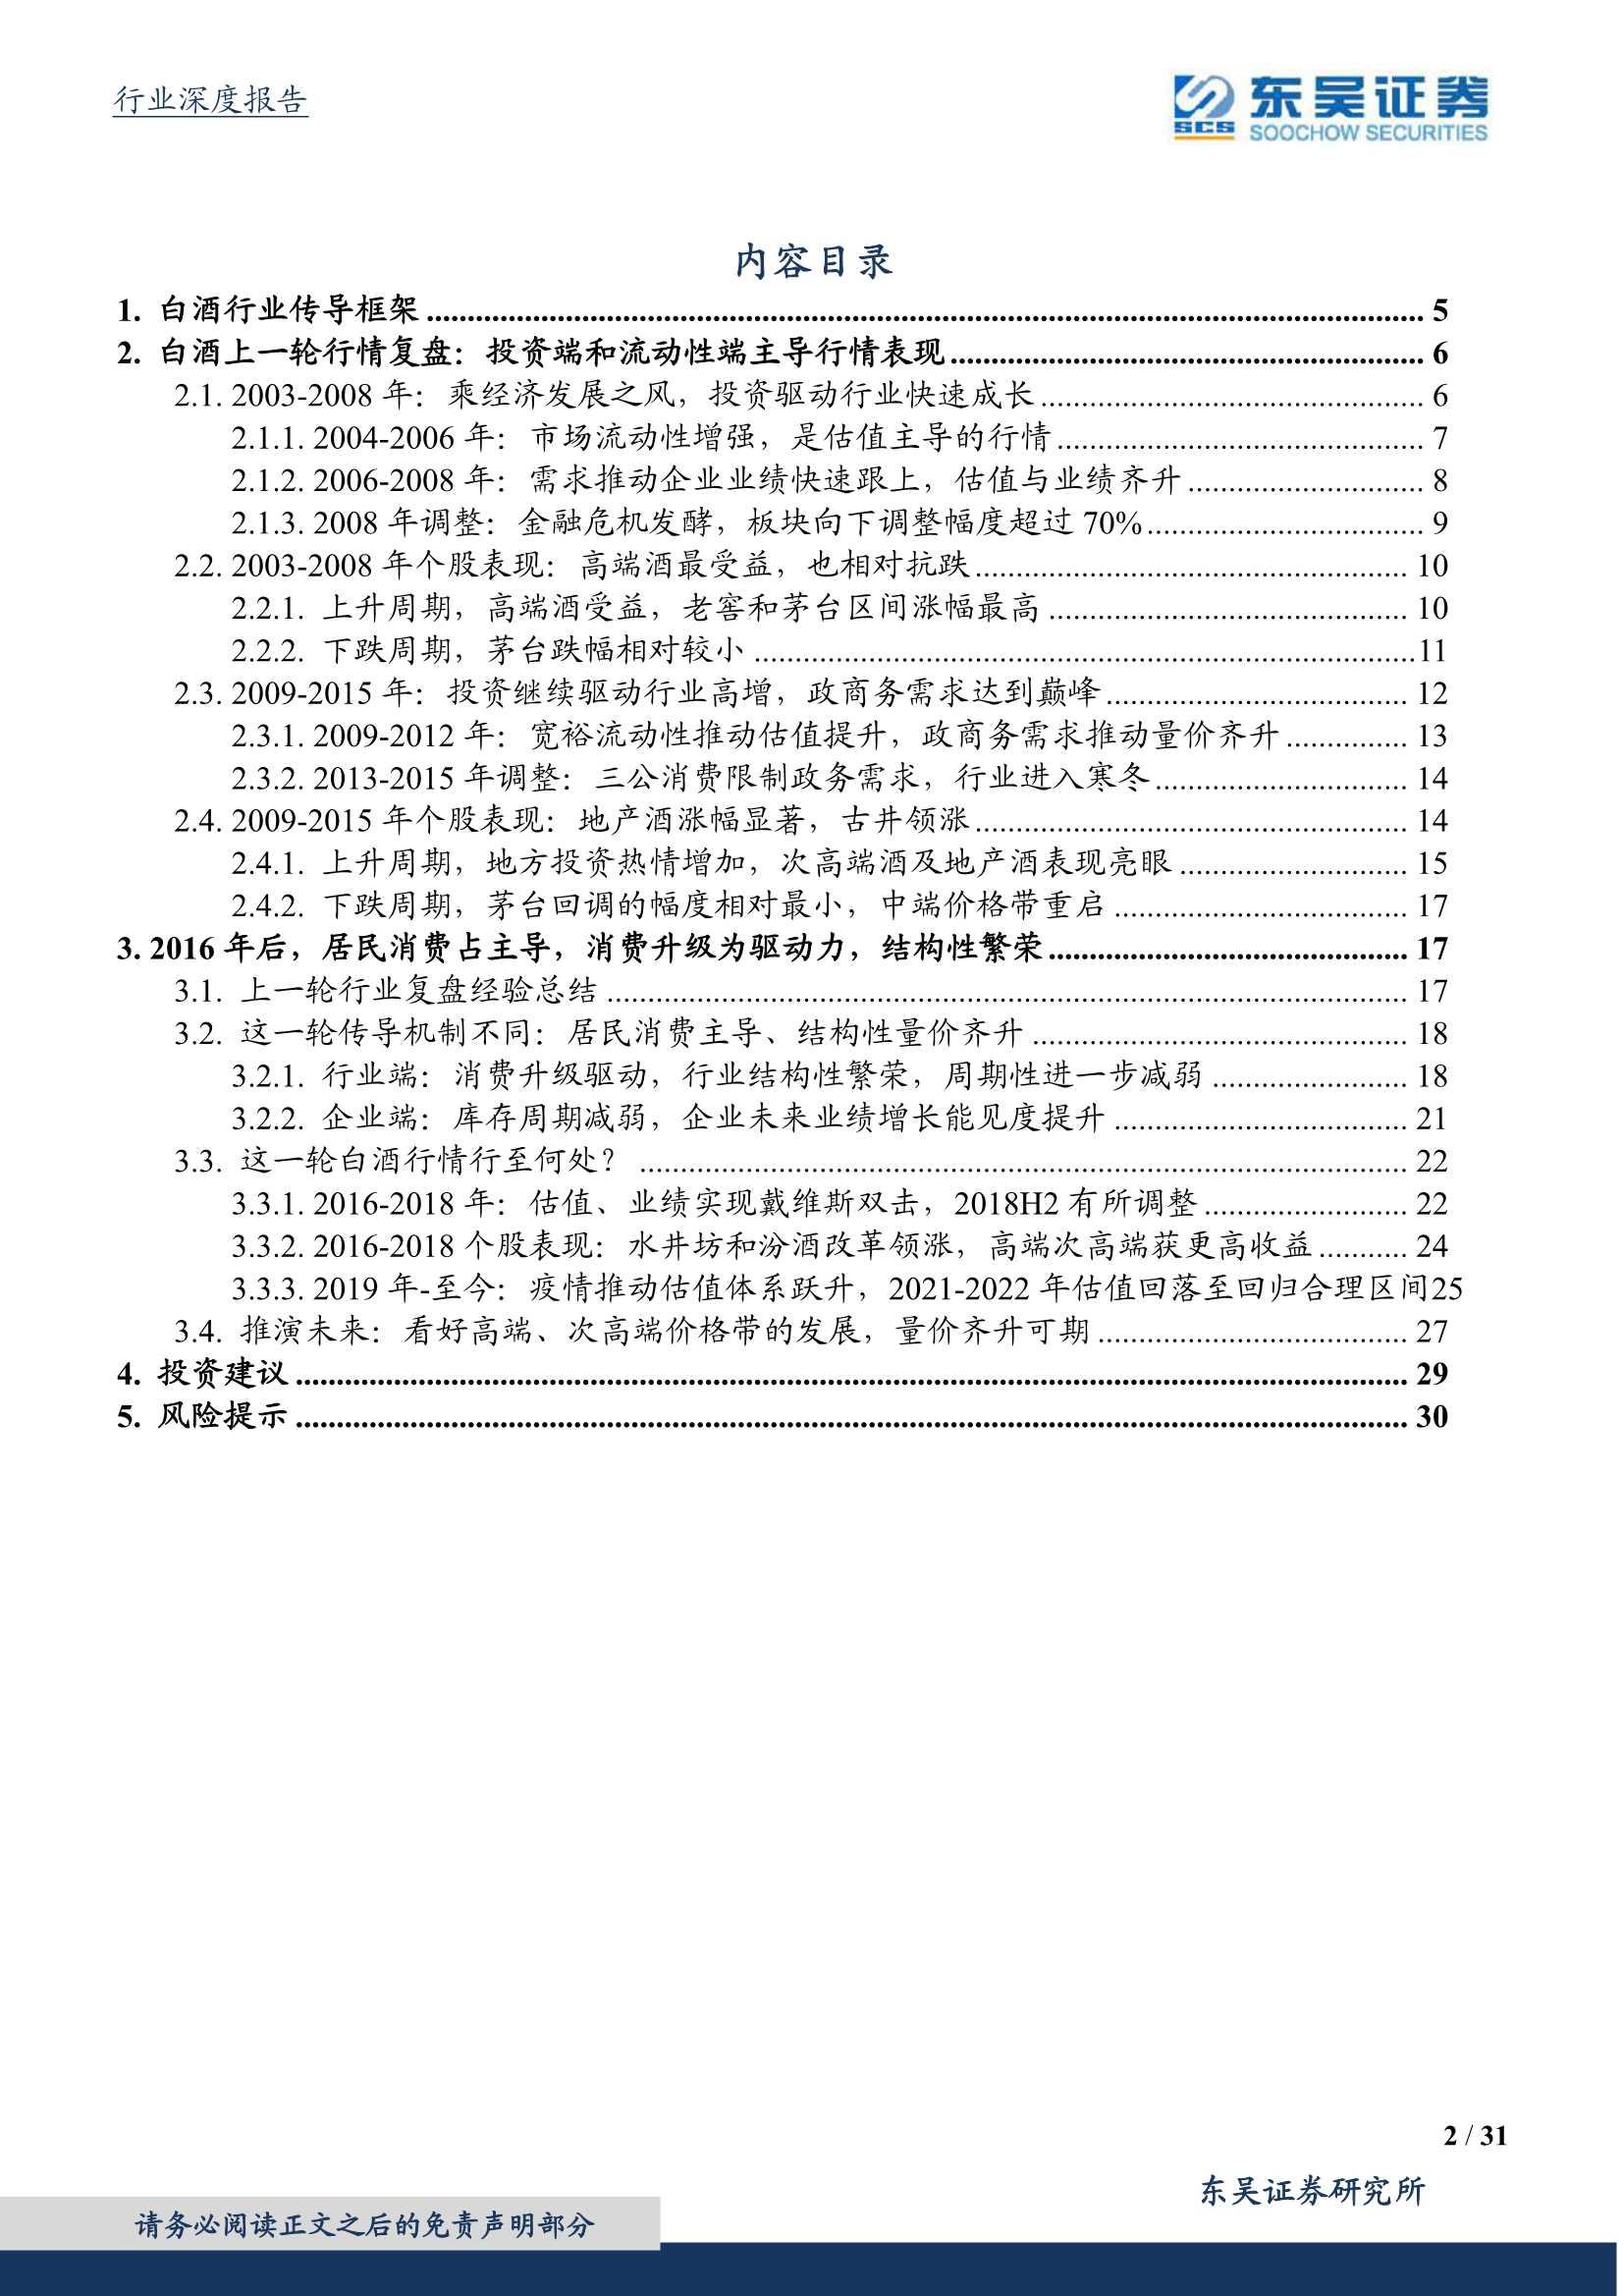 东吴证券-食品饮料行业深度报告：白酒板块的复盘与展望-20220312-31页